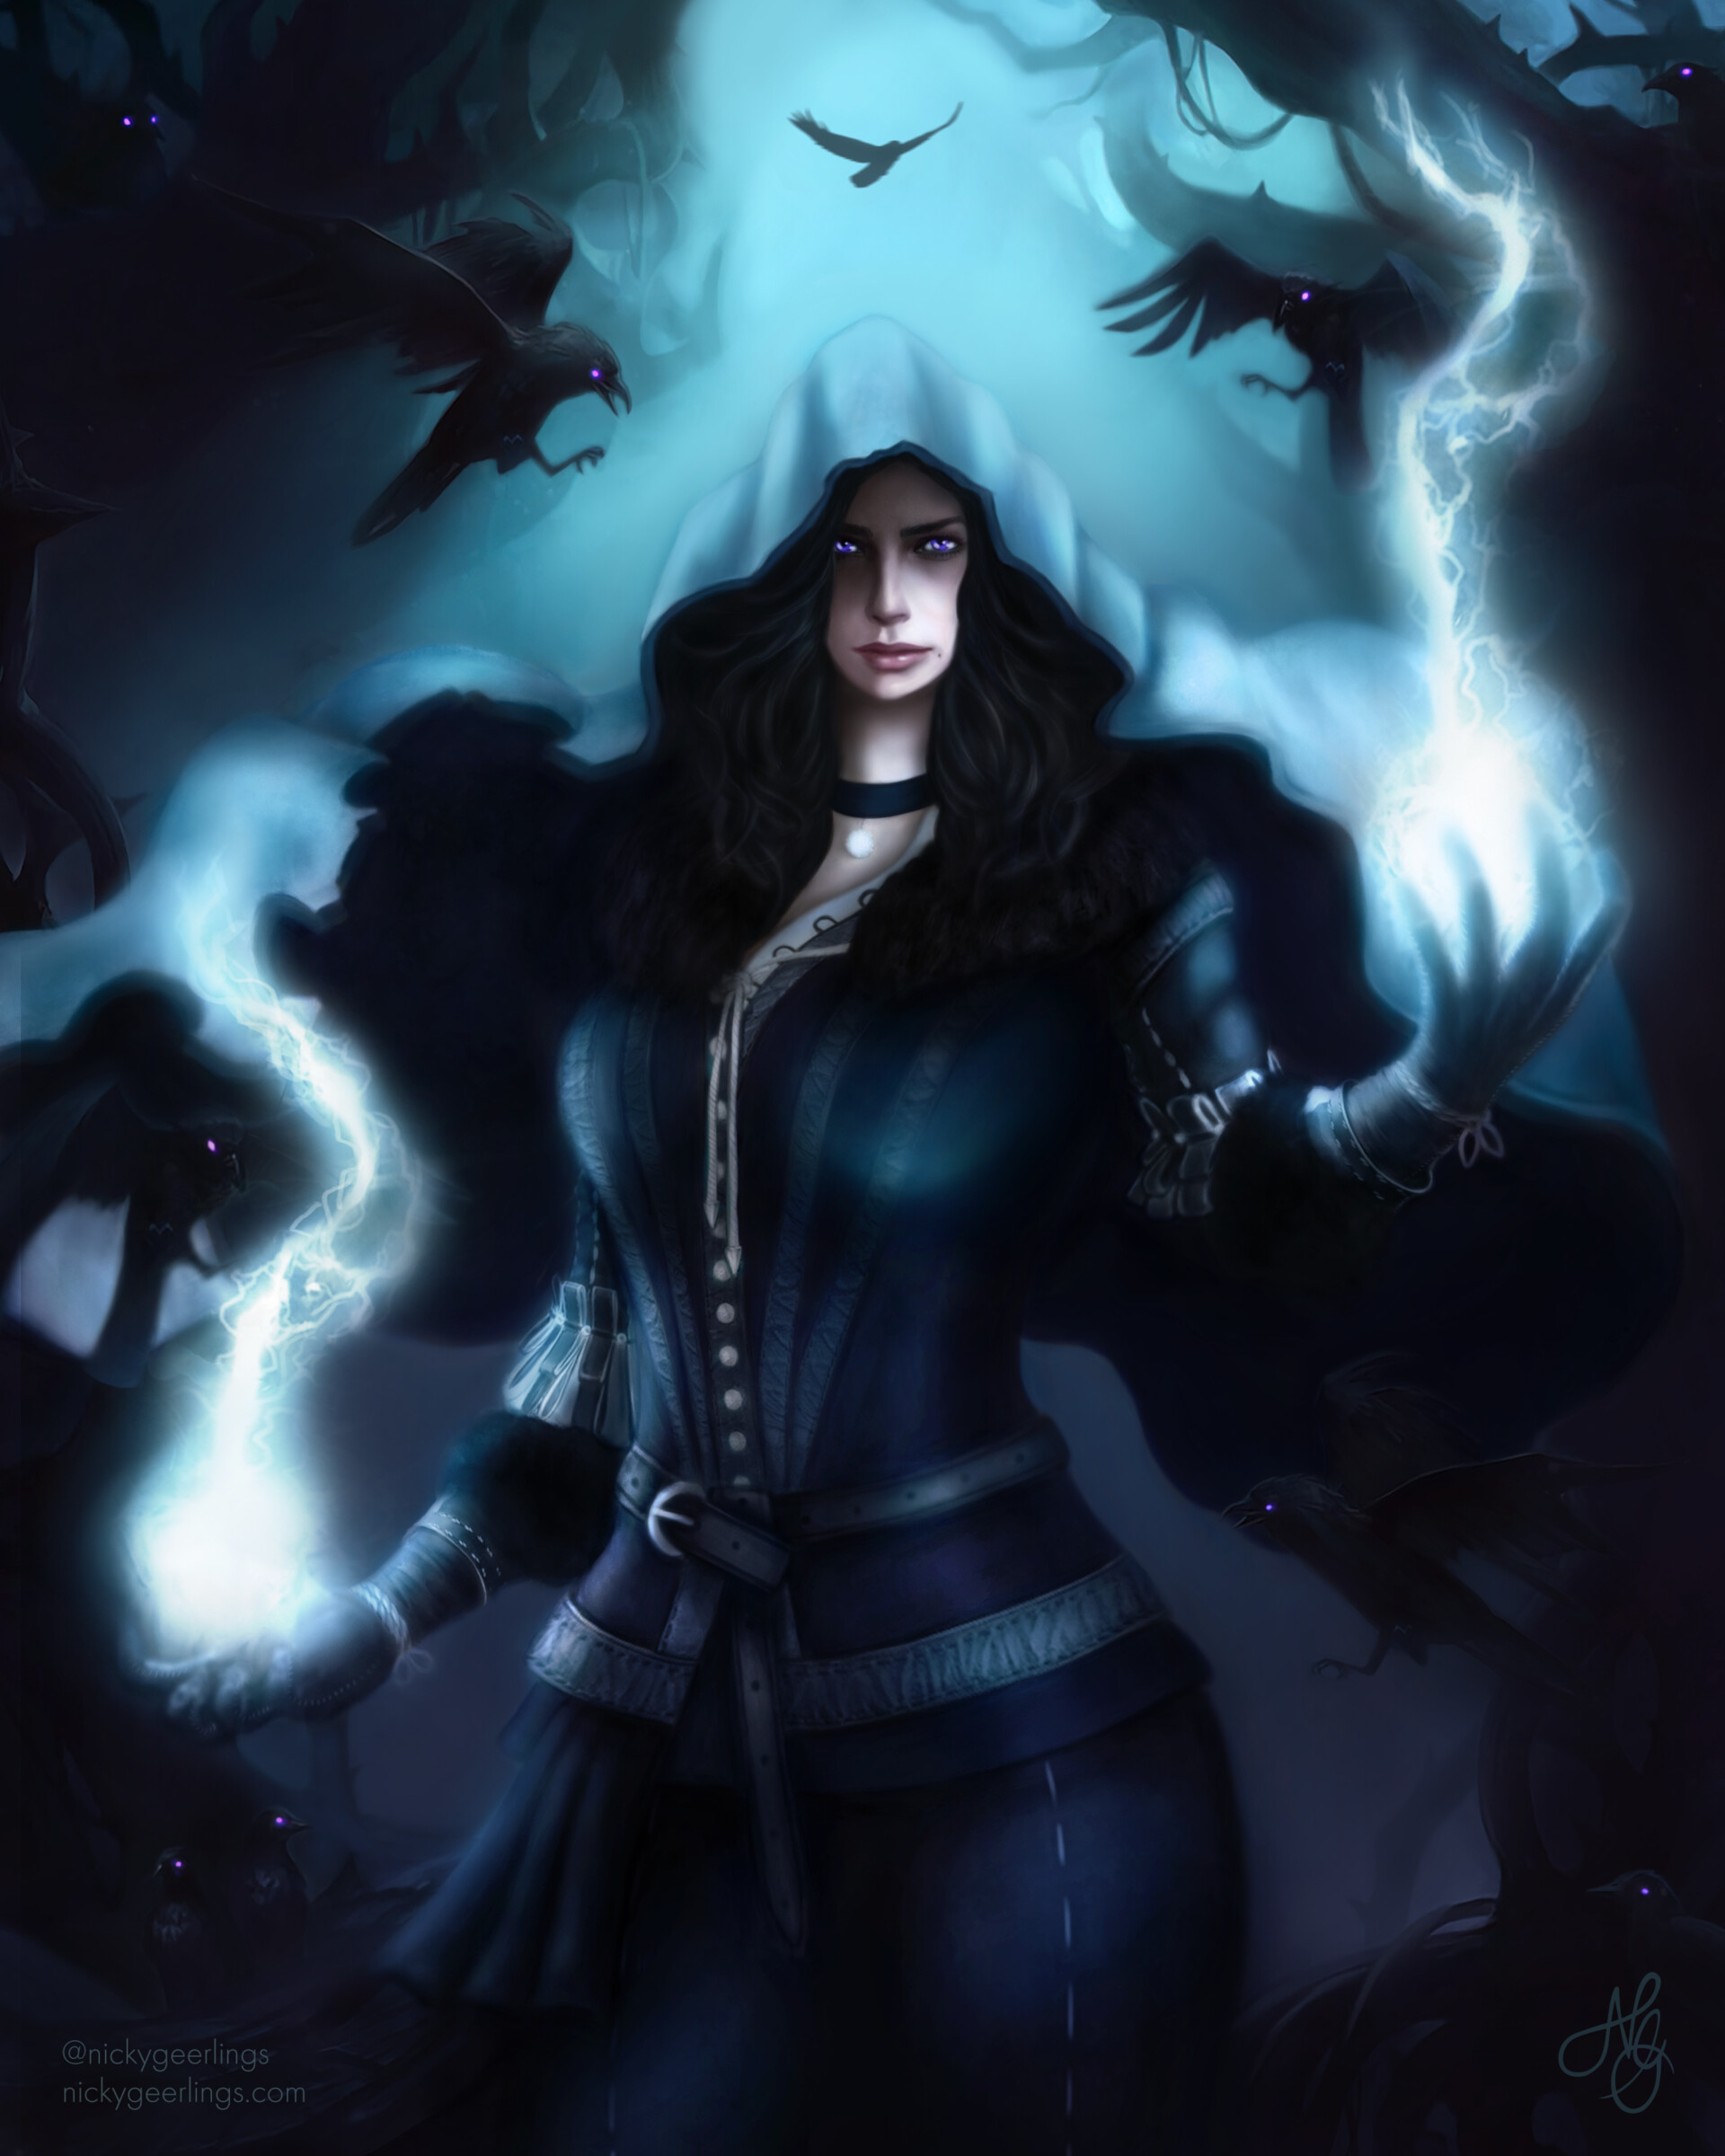 ArtStation - Yennefer of Vengerberg - The Witcher Games